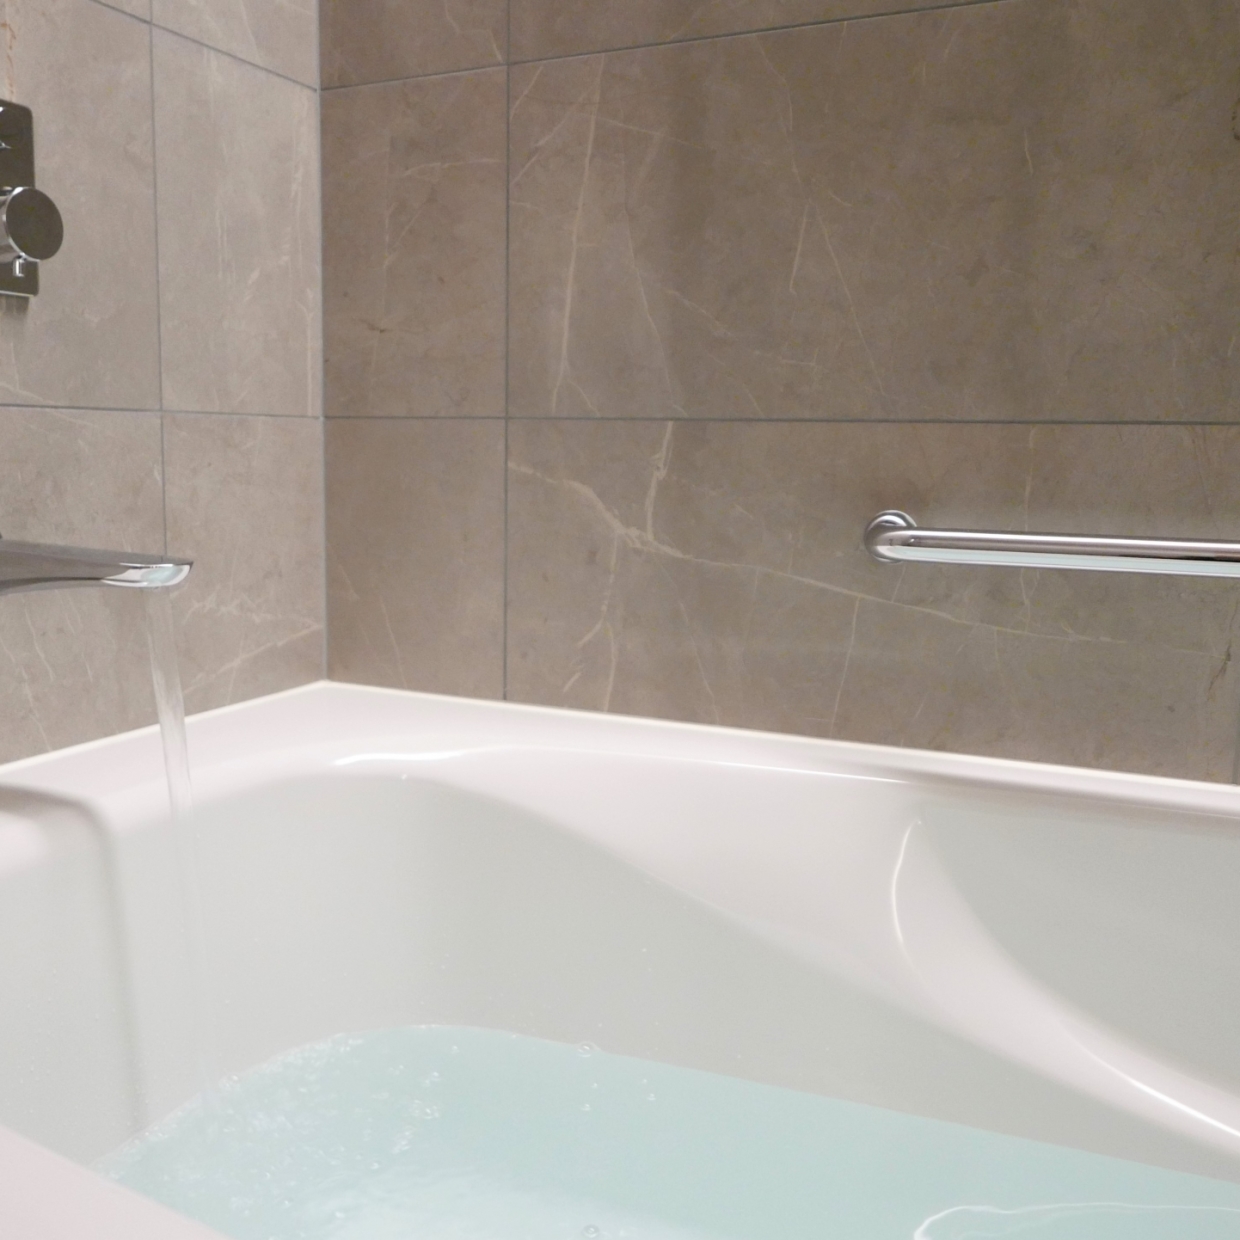  冬の入浴時に気をつけたいヒートショック！お風呂上がりの寒さを防ぐ3つのアイテム 